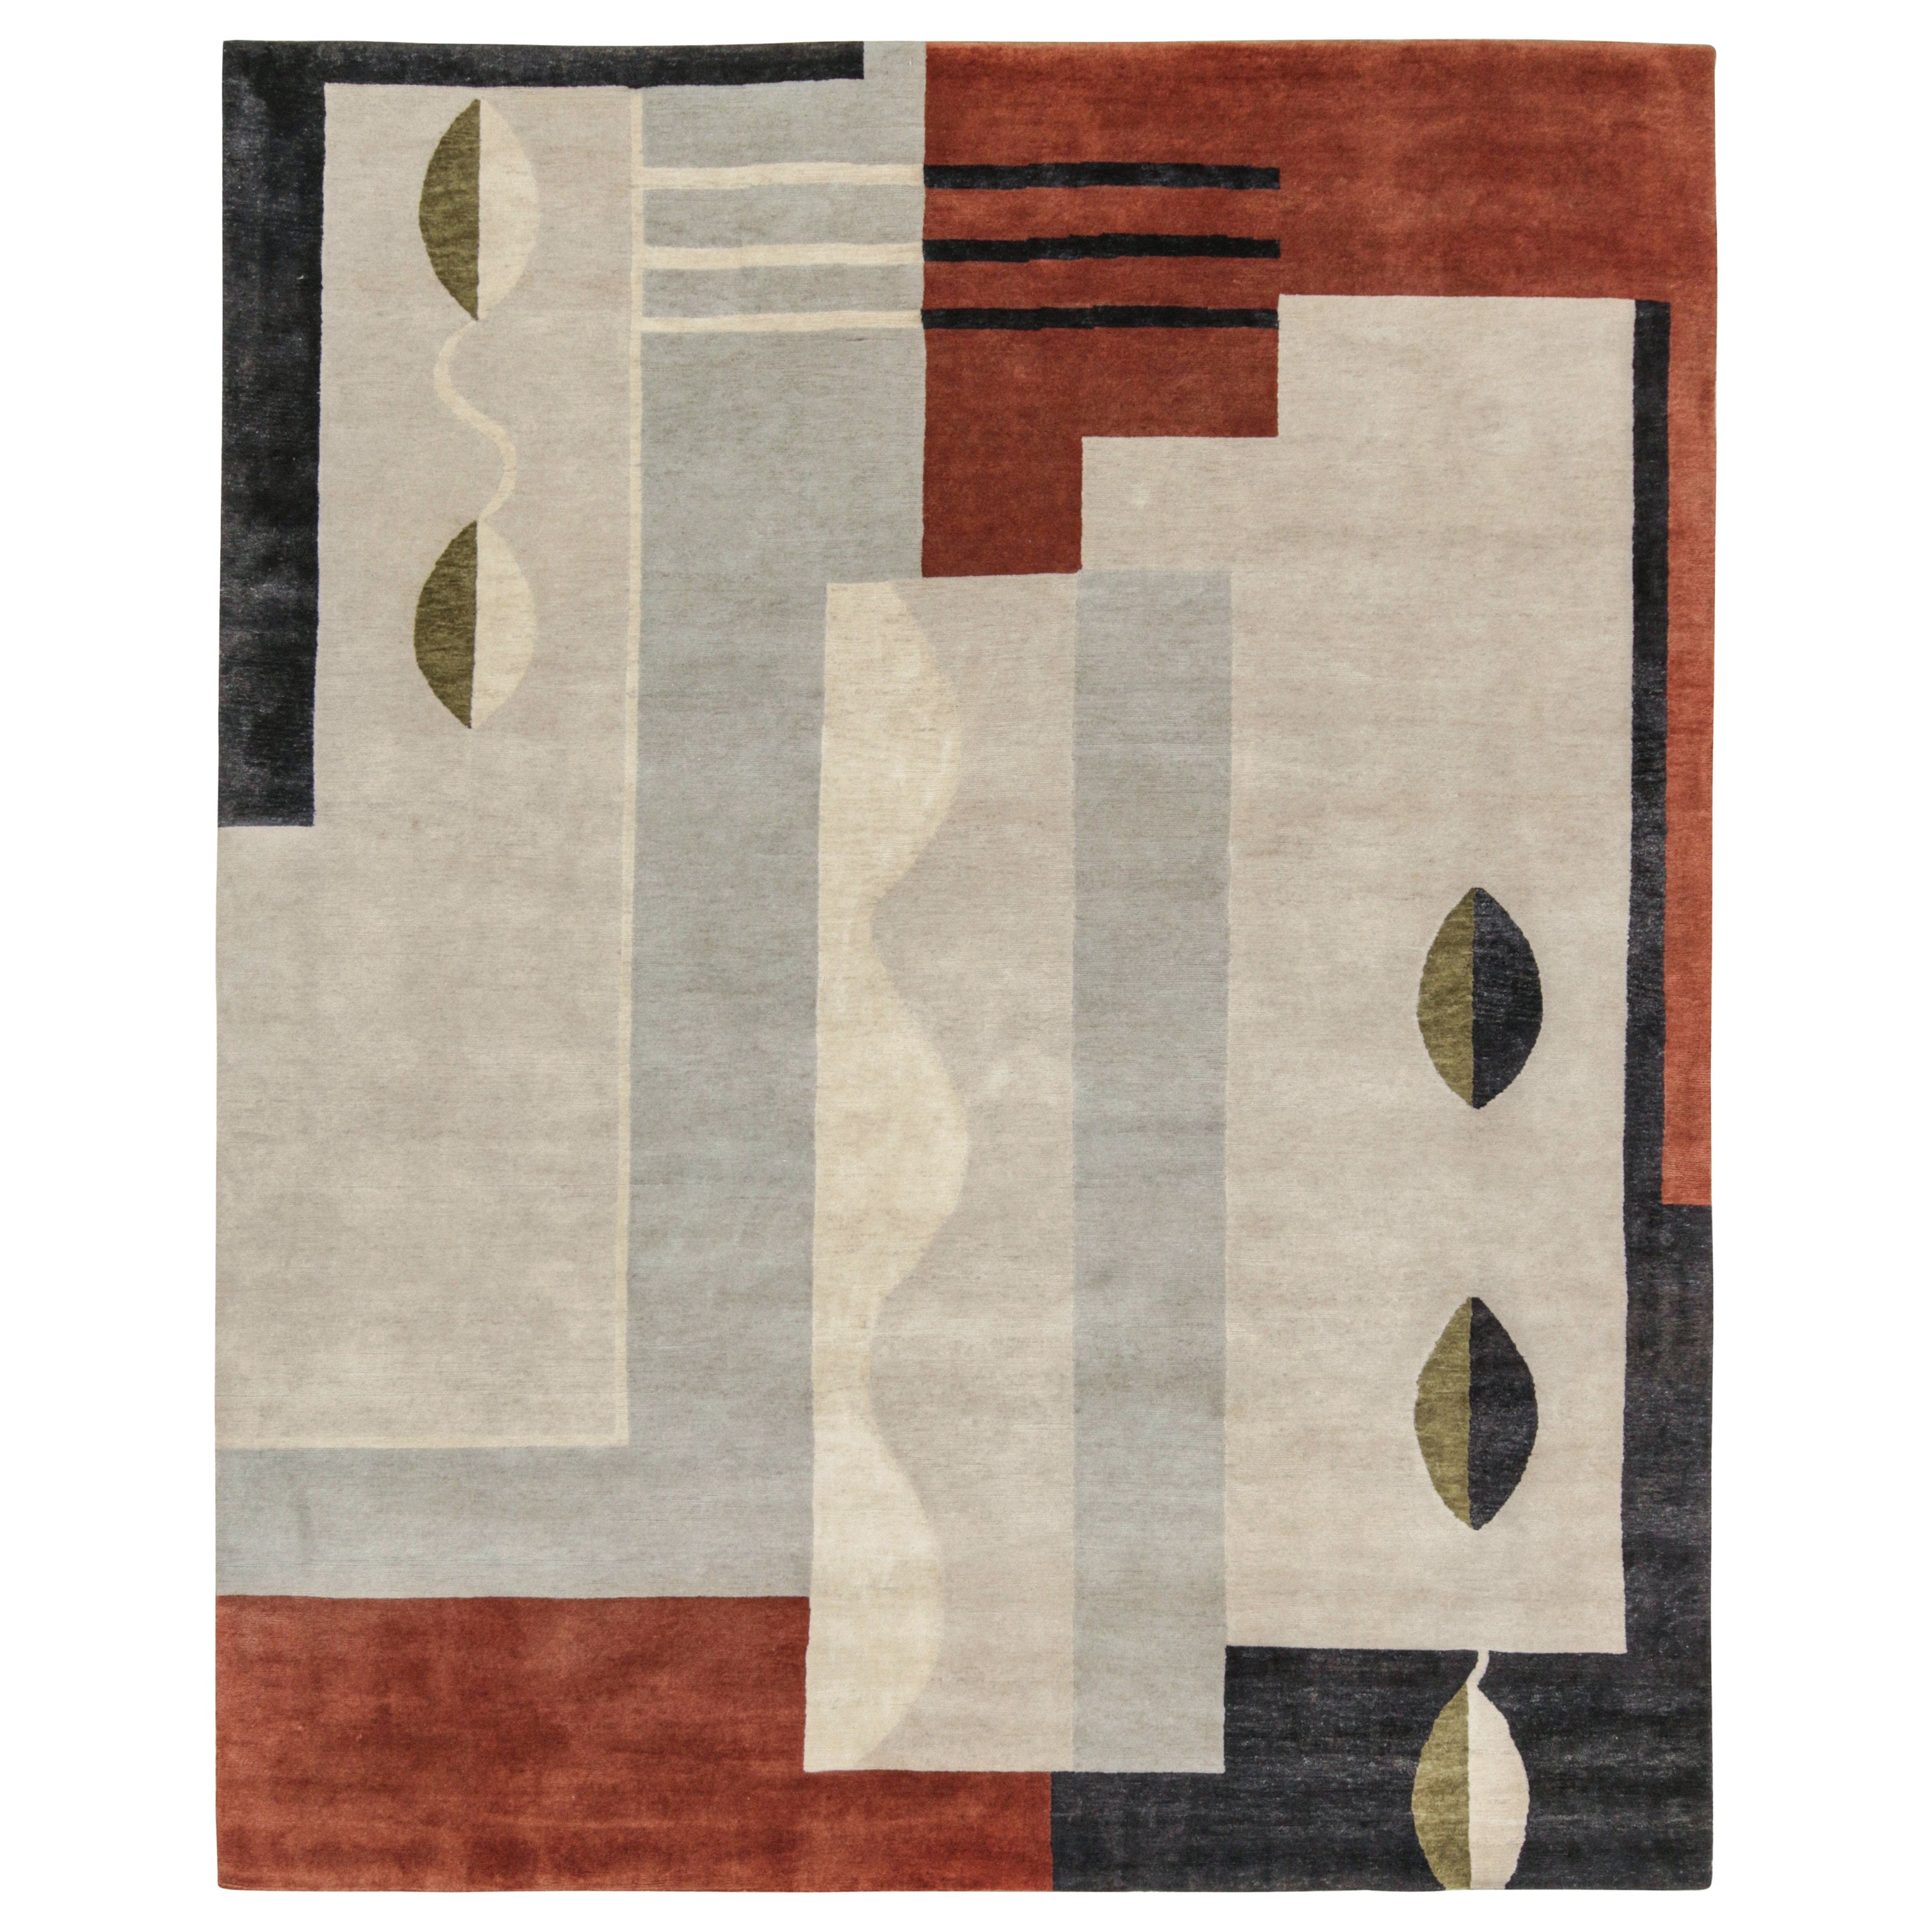 Französischer Art Deco-Teppich von Rug & Kilim in Grau, Braun und Schwarz mit geometrischem Muster